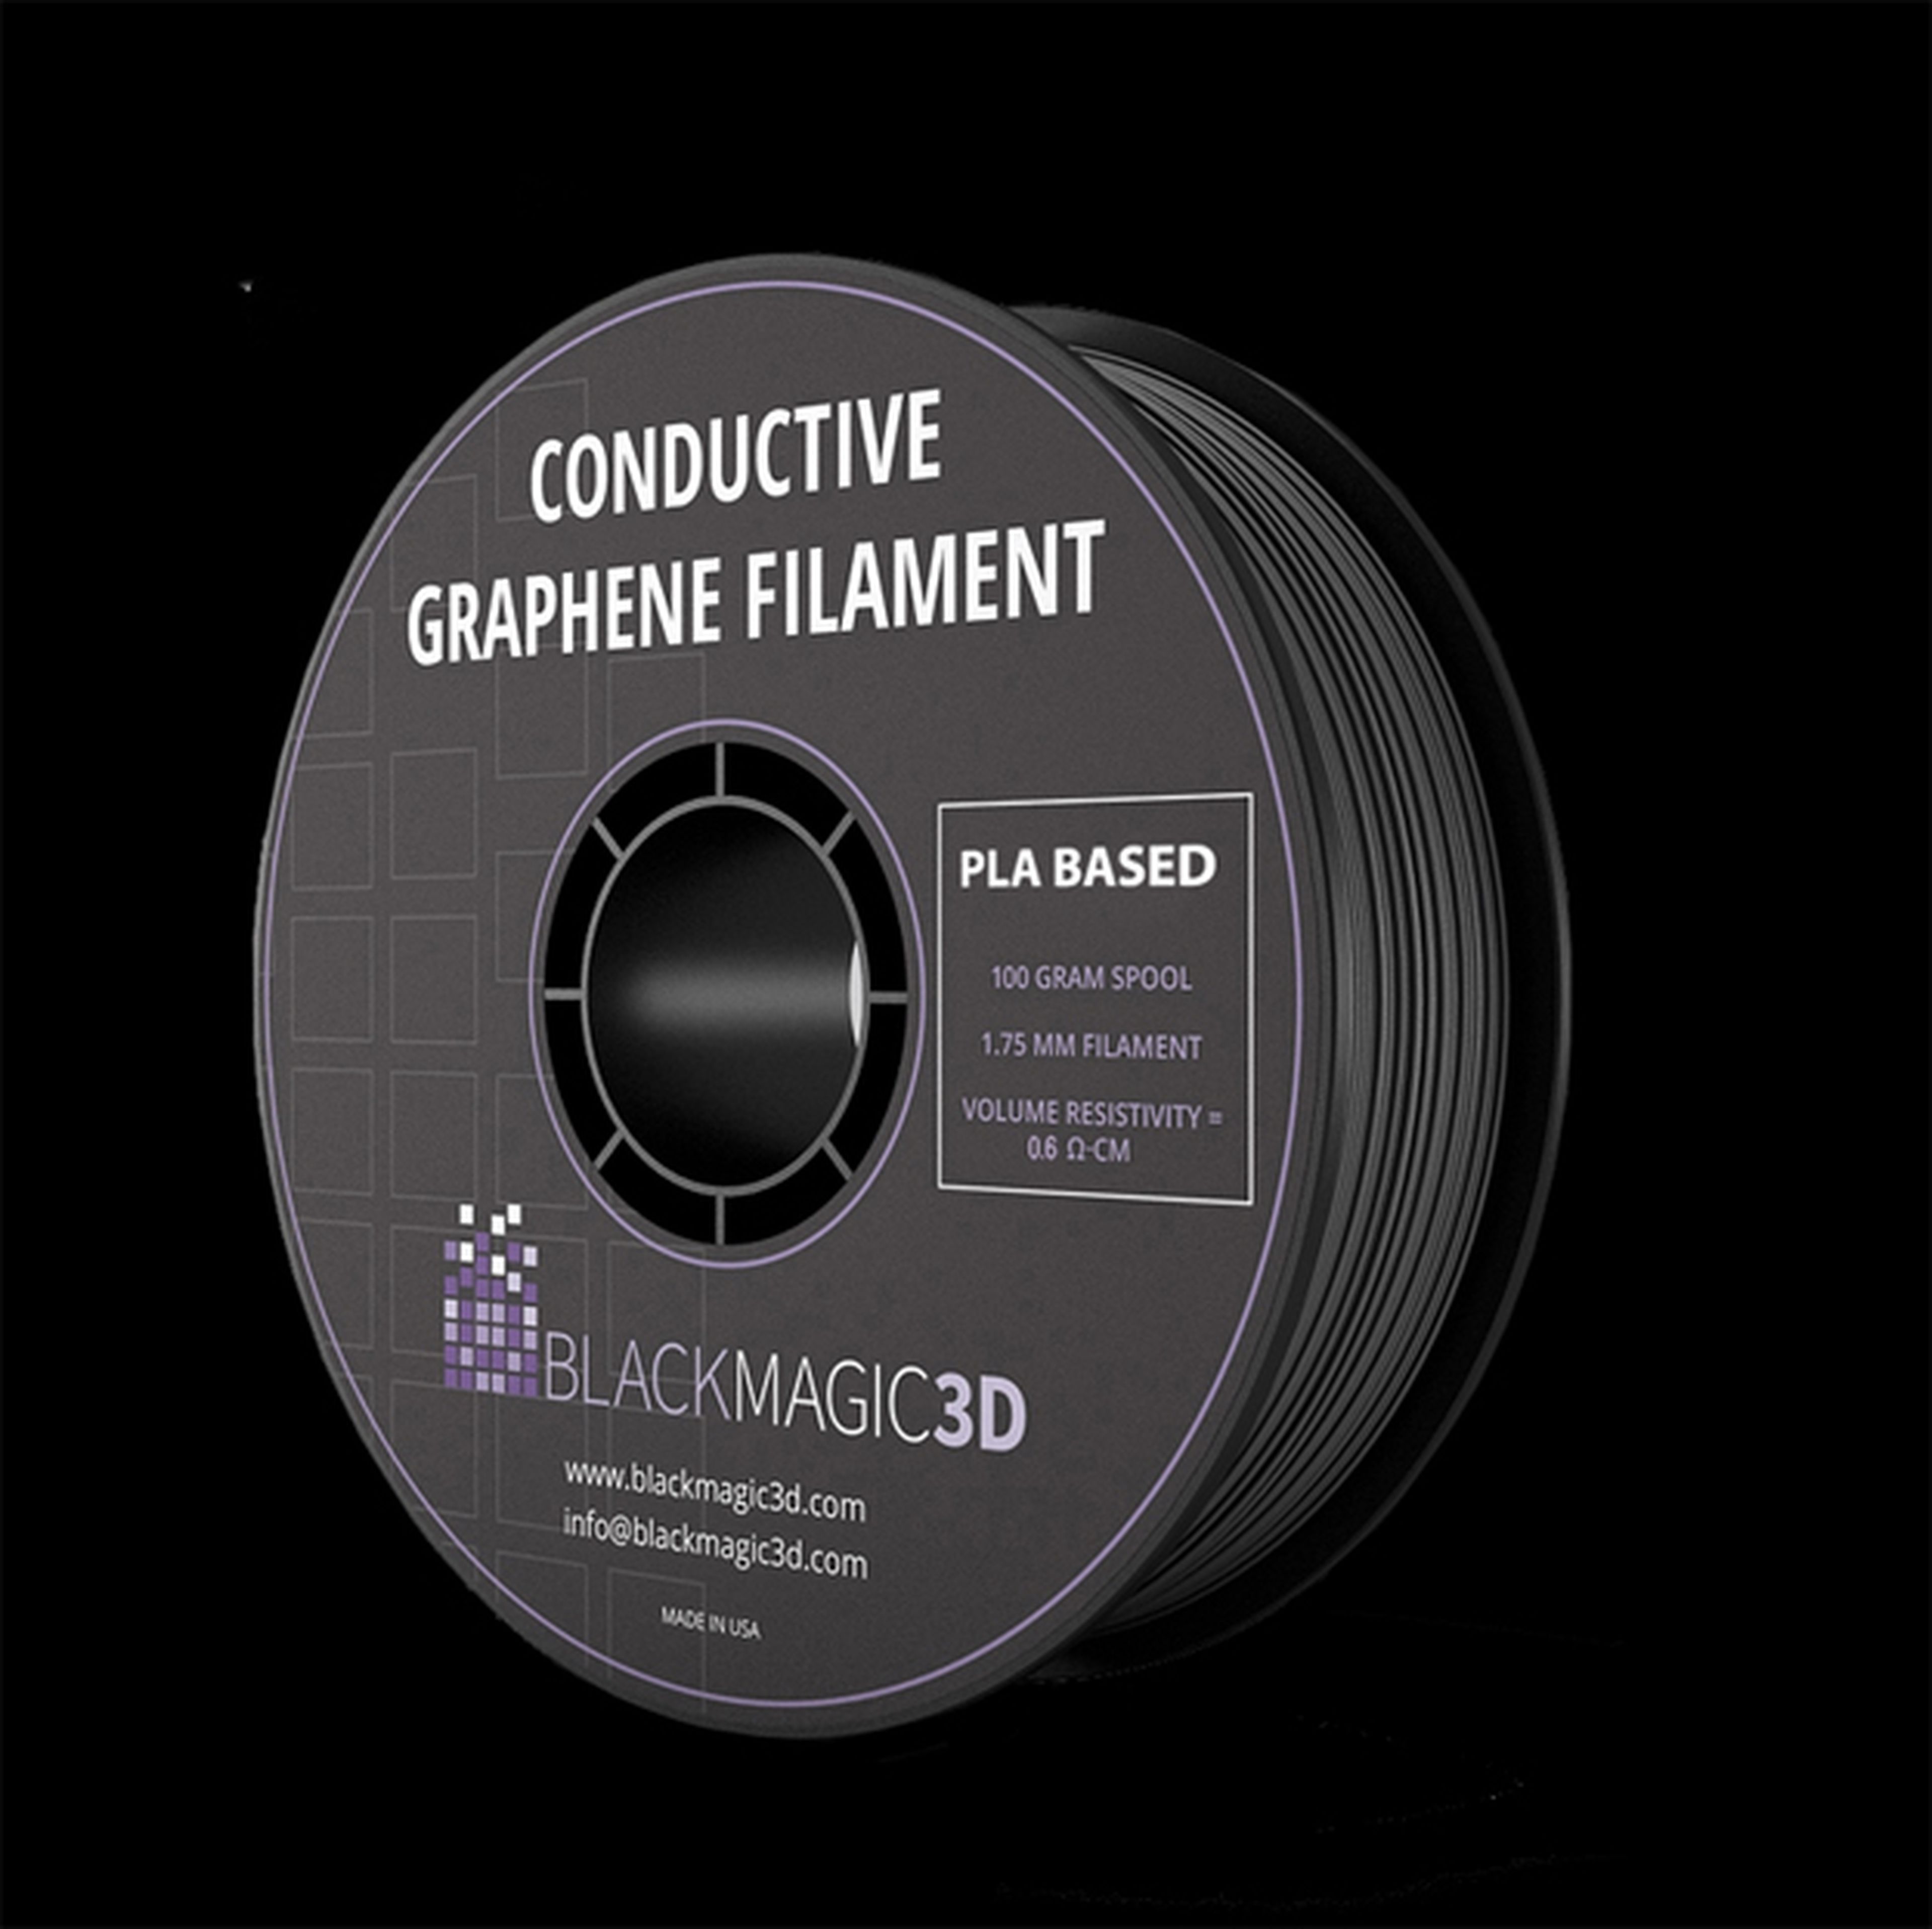 Filamento de grafeno con capacidad conductiva para imprimir productos electrónicos.